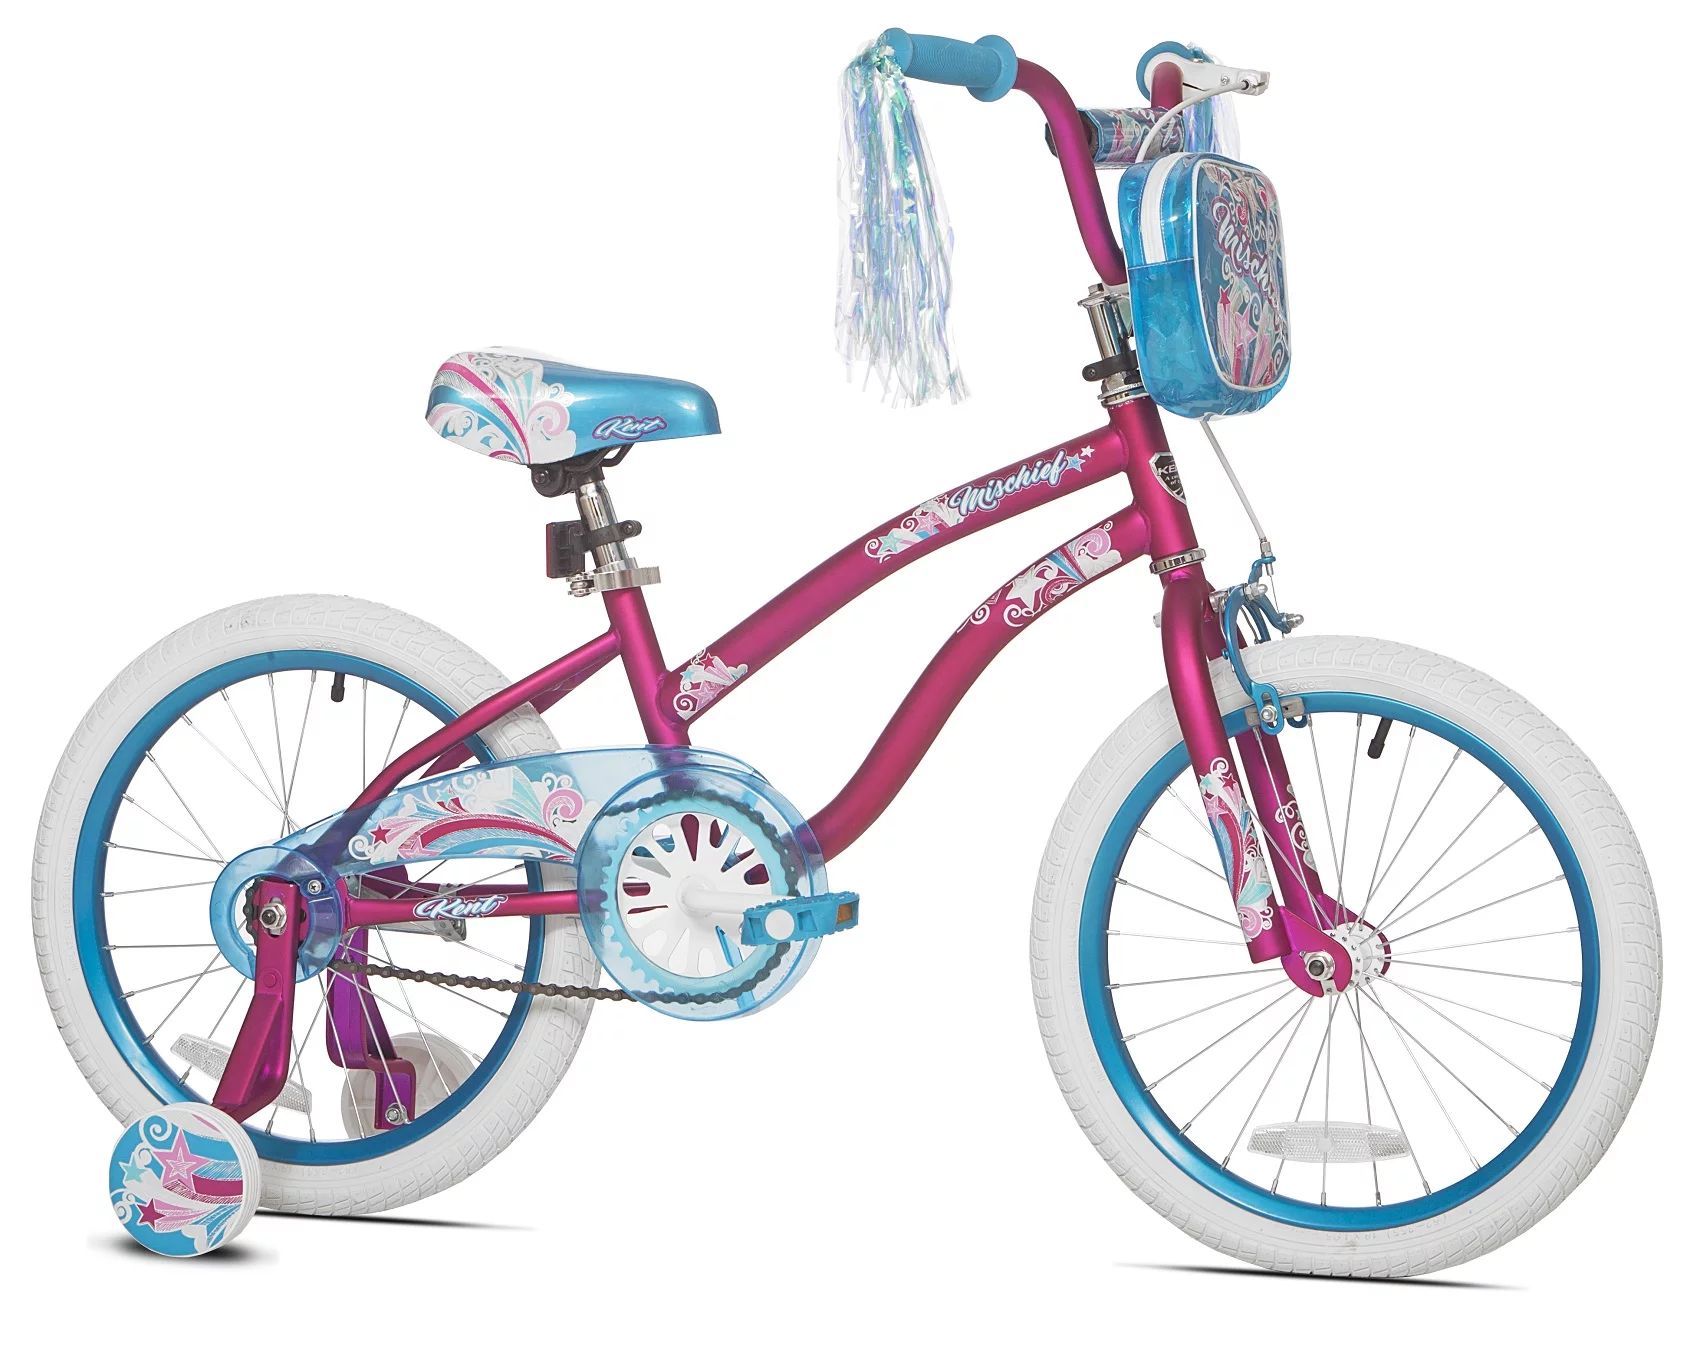 Kent 18" Mischief Girl's Bike, Pink - Walmart.com | Walmart (US)